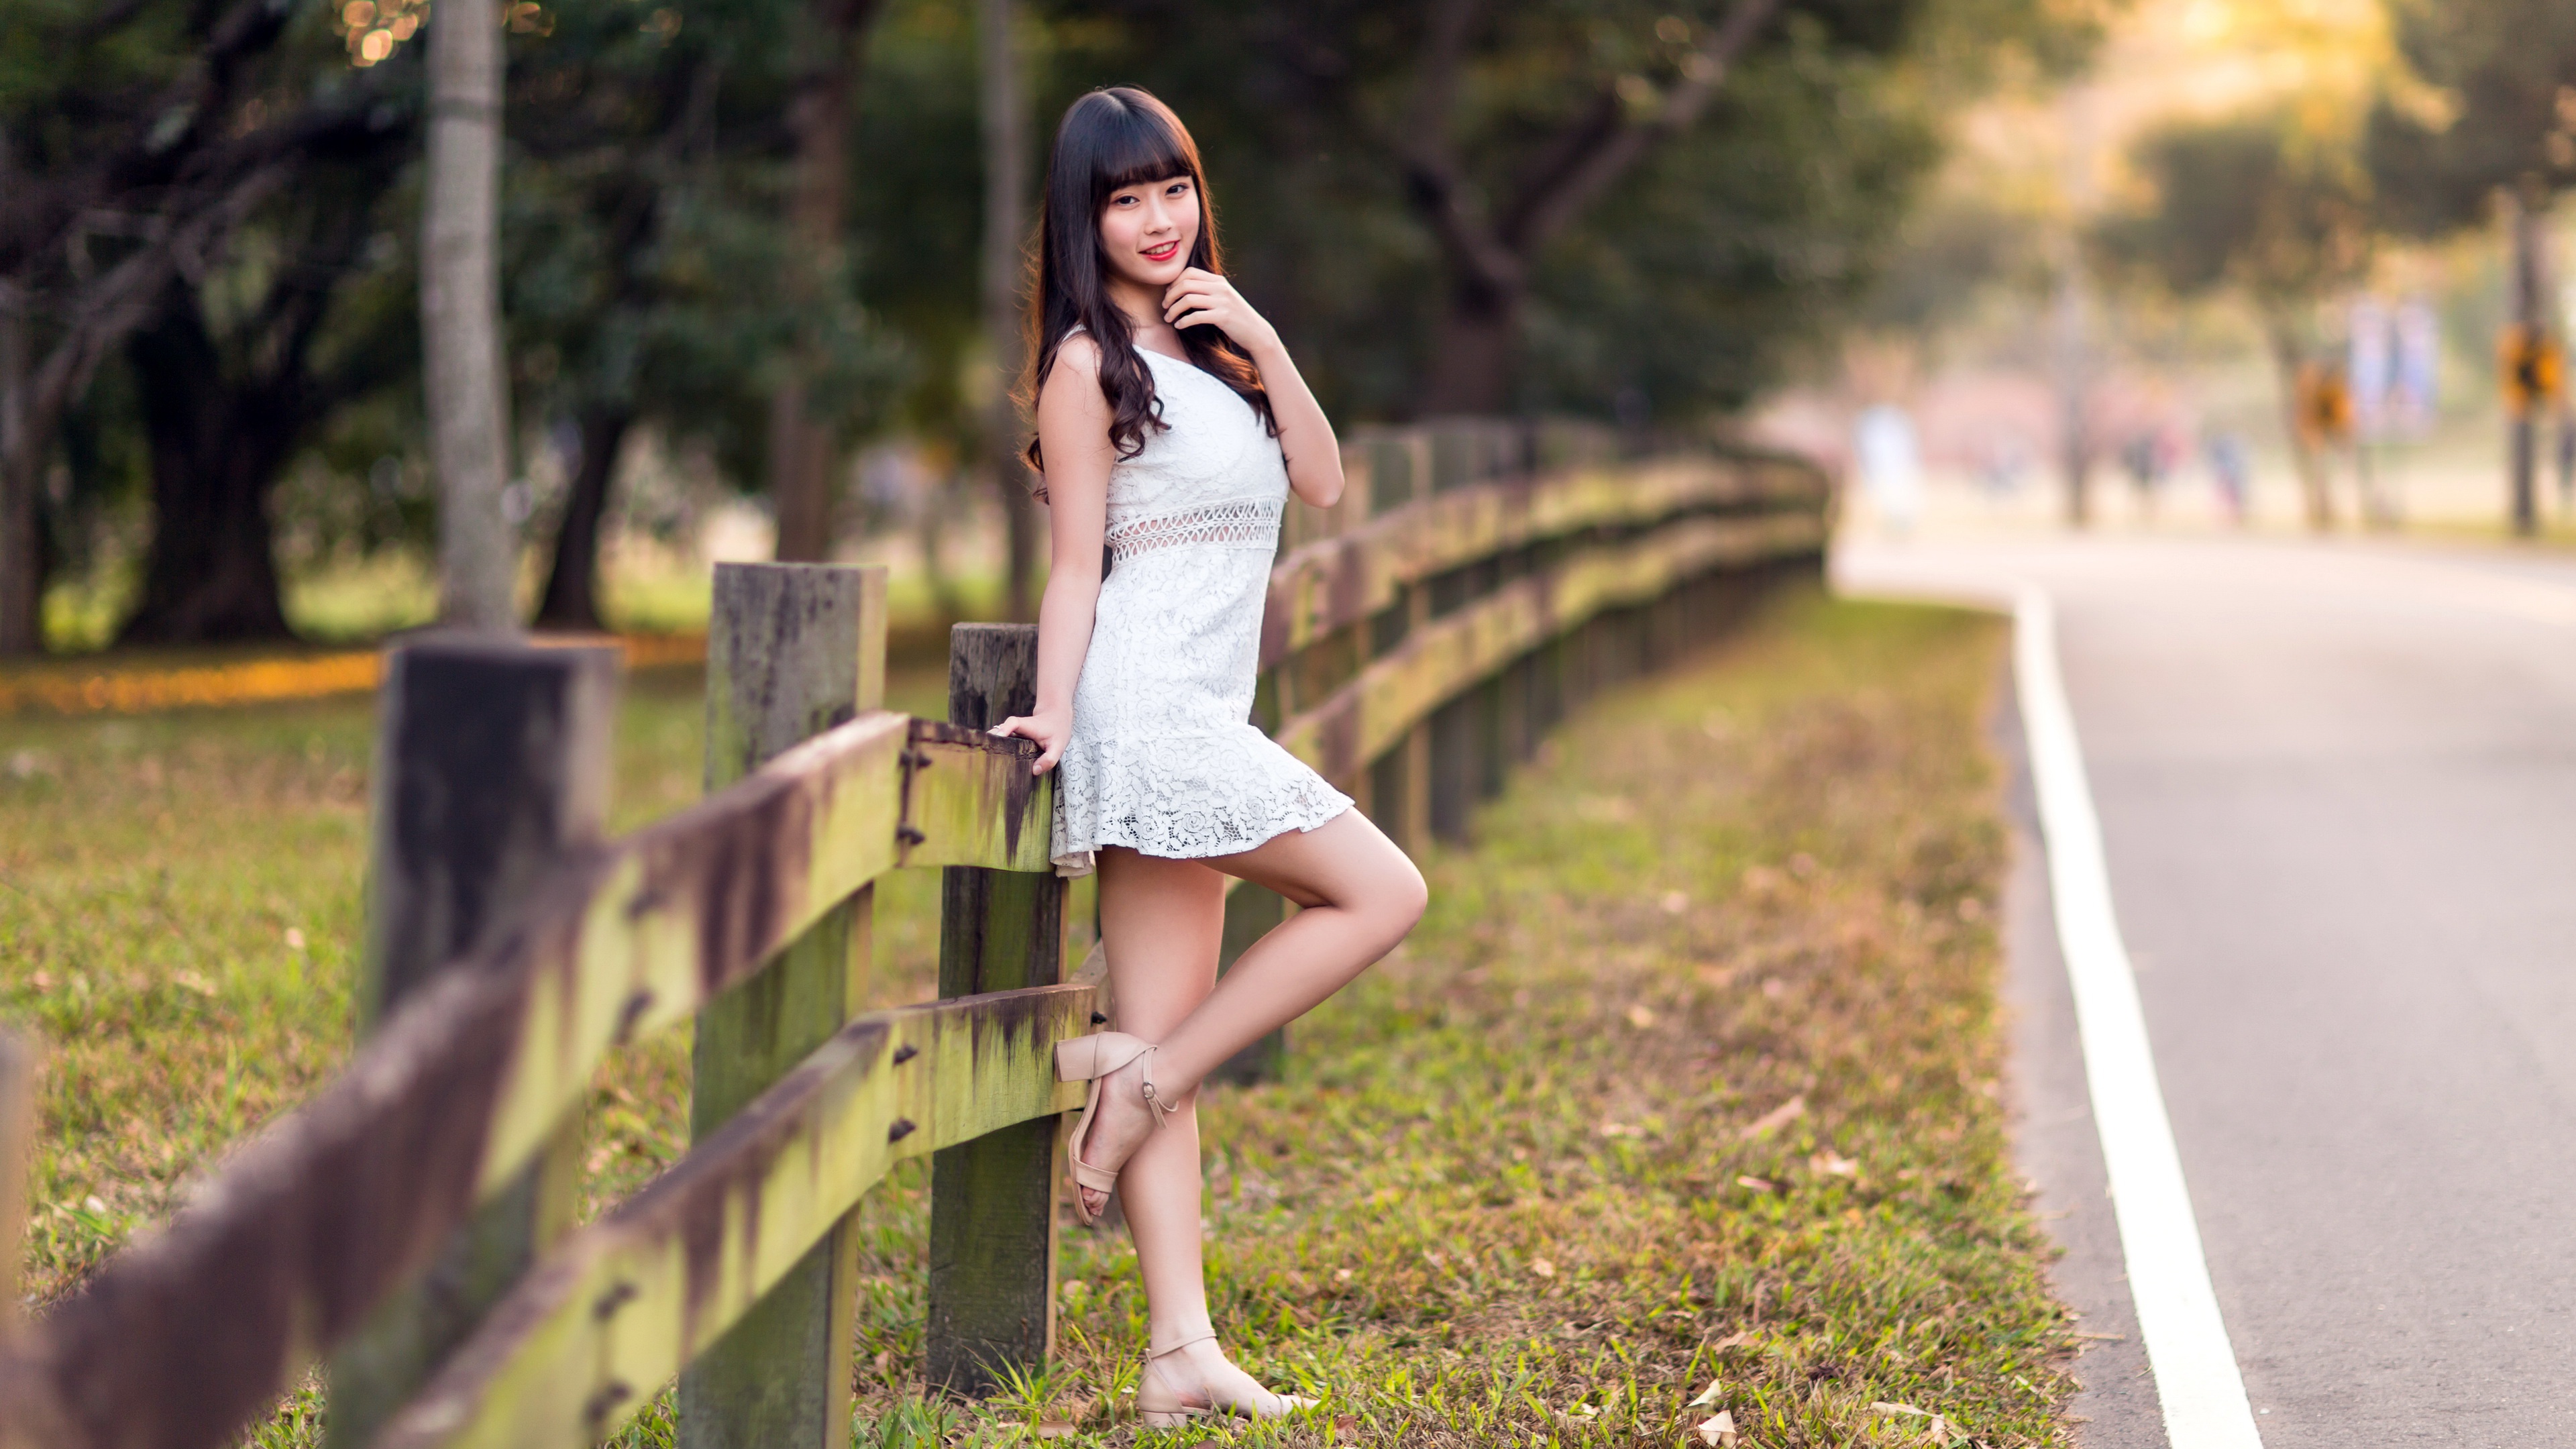 Asian Women Model Fence Street Leg Up Dress Looking At Viewer 3840x2160